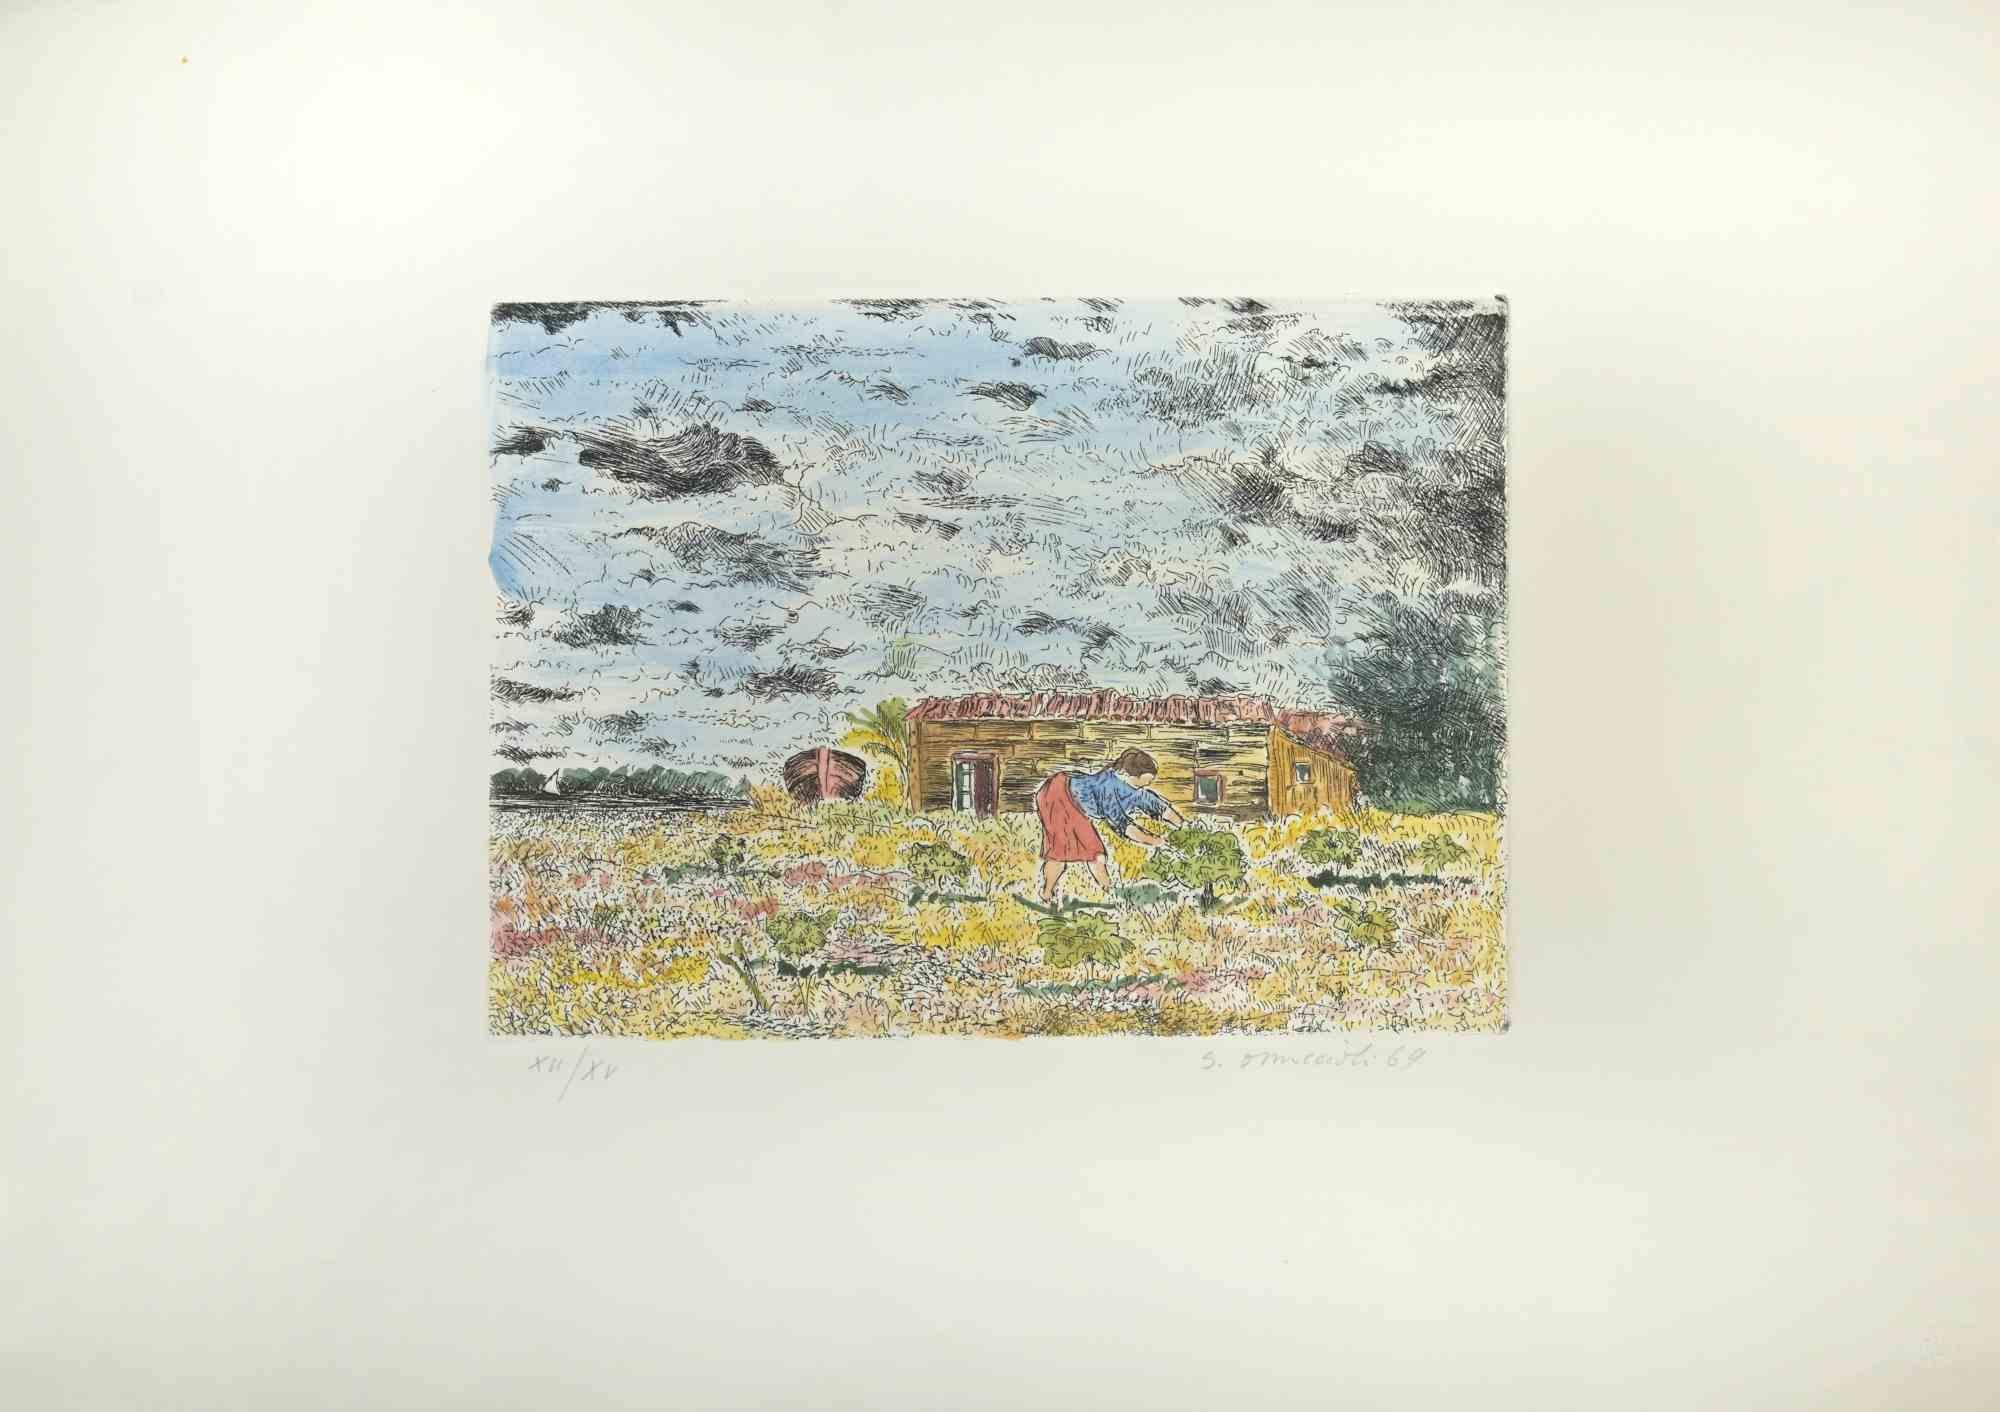 Mädchen auf dem Bauernhof ist ein 1969 entstandenes Kunstwerk von Giovanni Omiccioli (25. Februar 1901 - 1. März 1975).

Farbige Original-Radierung und Aquatinta.

In der rechten unteren Ecke mit Bleistift vom Künstler handsigniert und datiert: